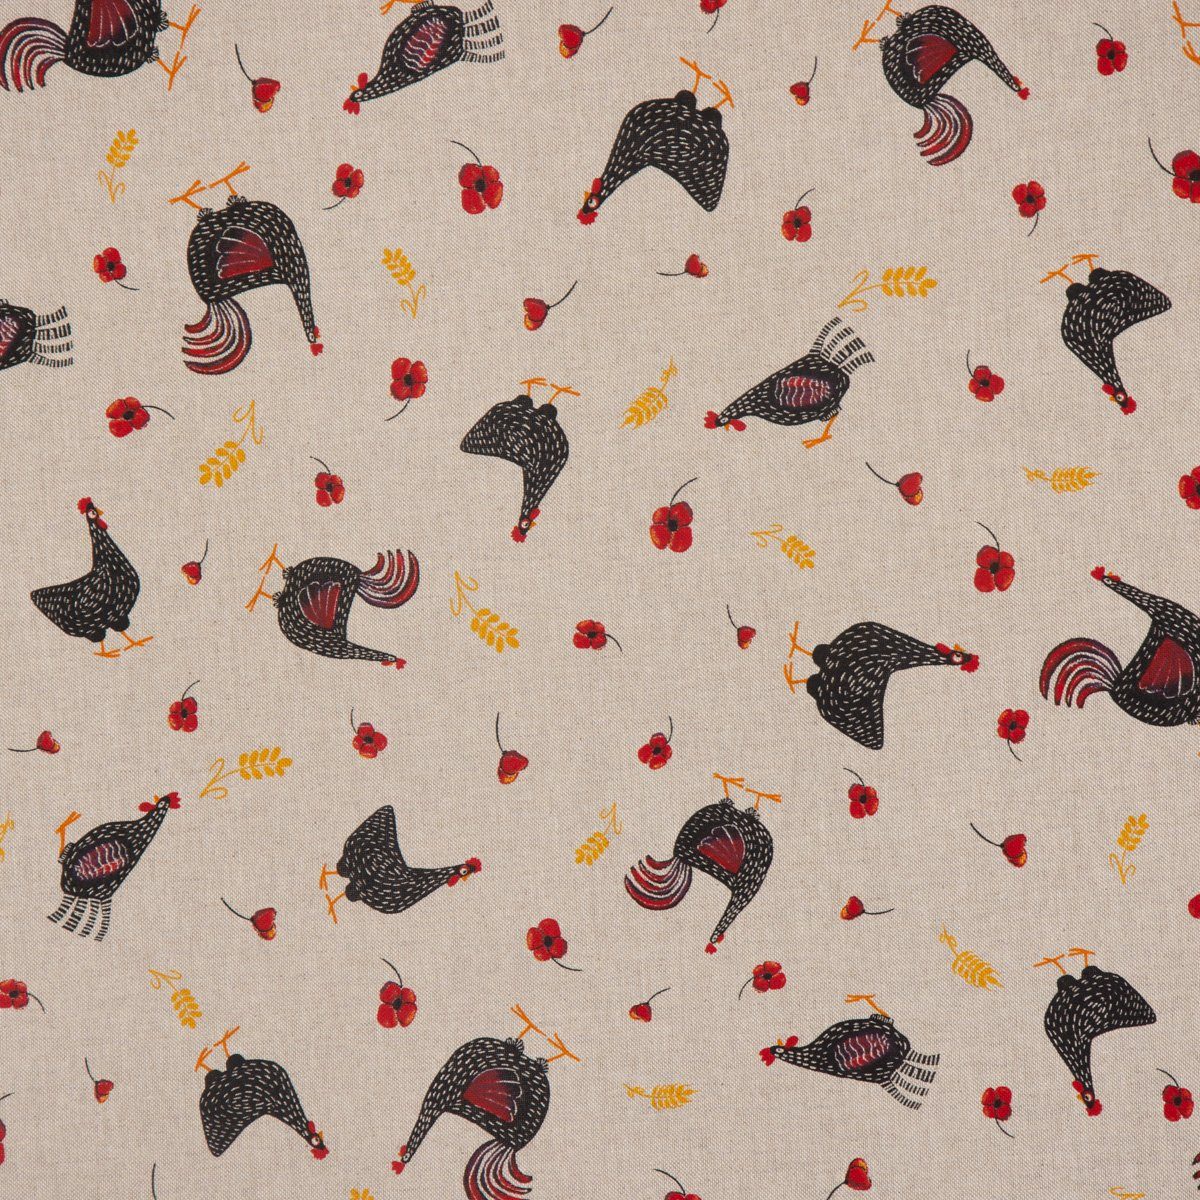 LEBEN. handmade Hühner Tischdecke schwarz, LEBEN. Mohnblume SCHÖNER SCHÖNER rot natur Tischdecke